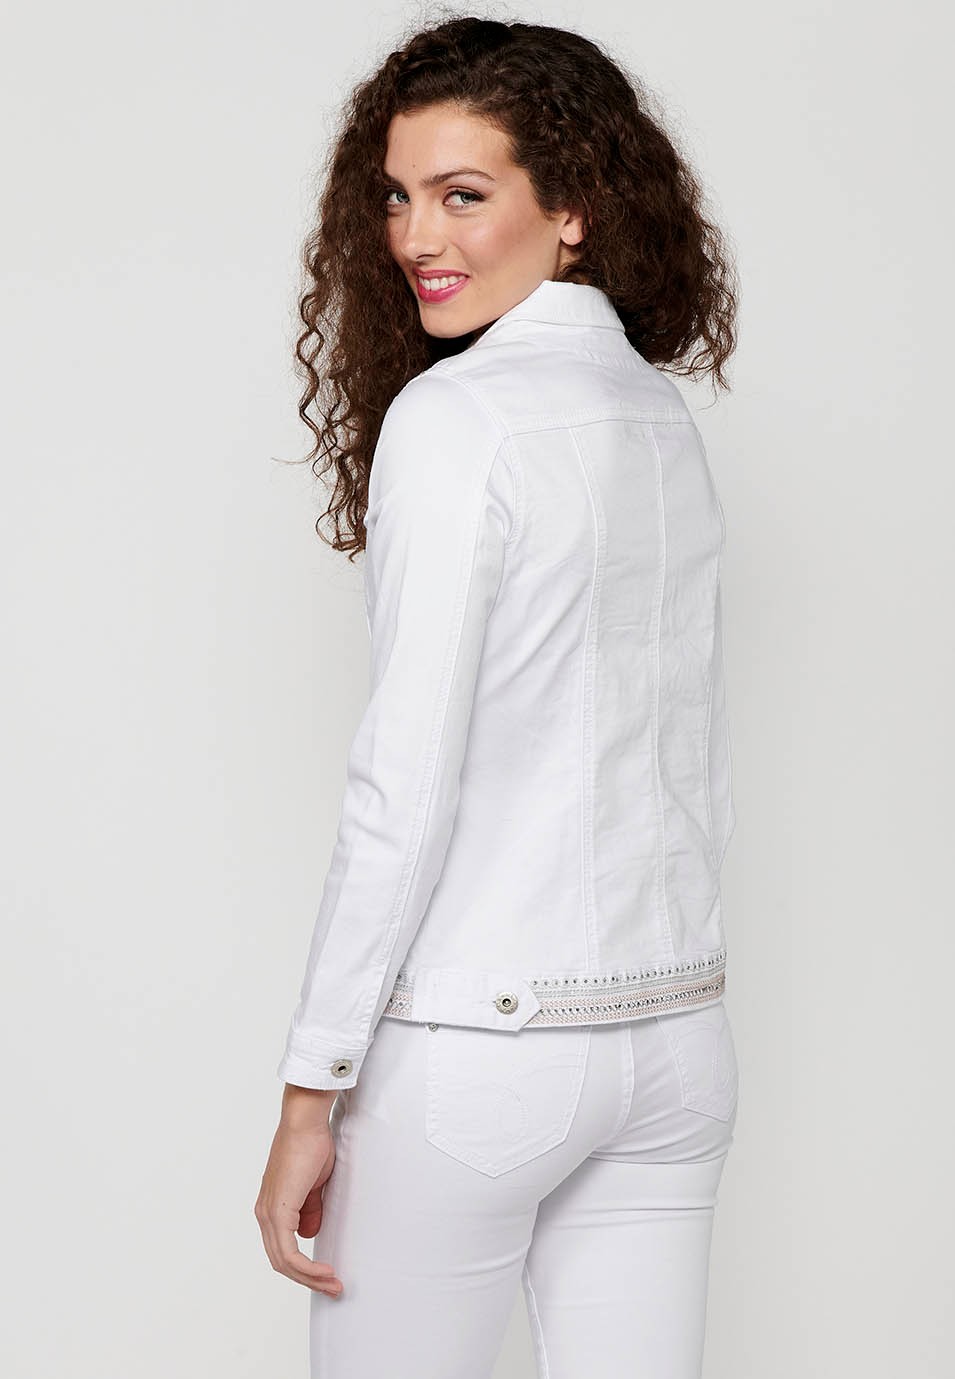 Jeansjacke mit Knopfverschluss vorne und Hemdkragen mit Blumenstickerei auf den Schultern und weißen Taschen für Damen 7